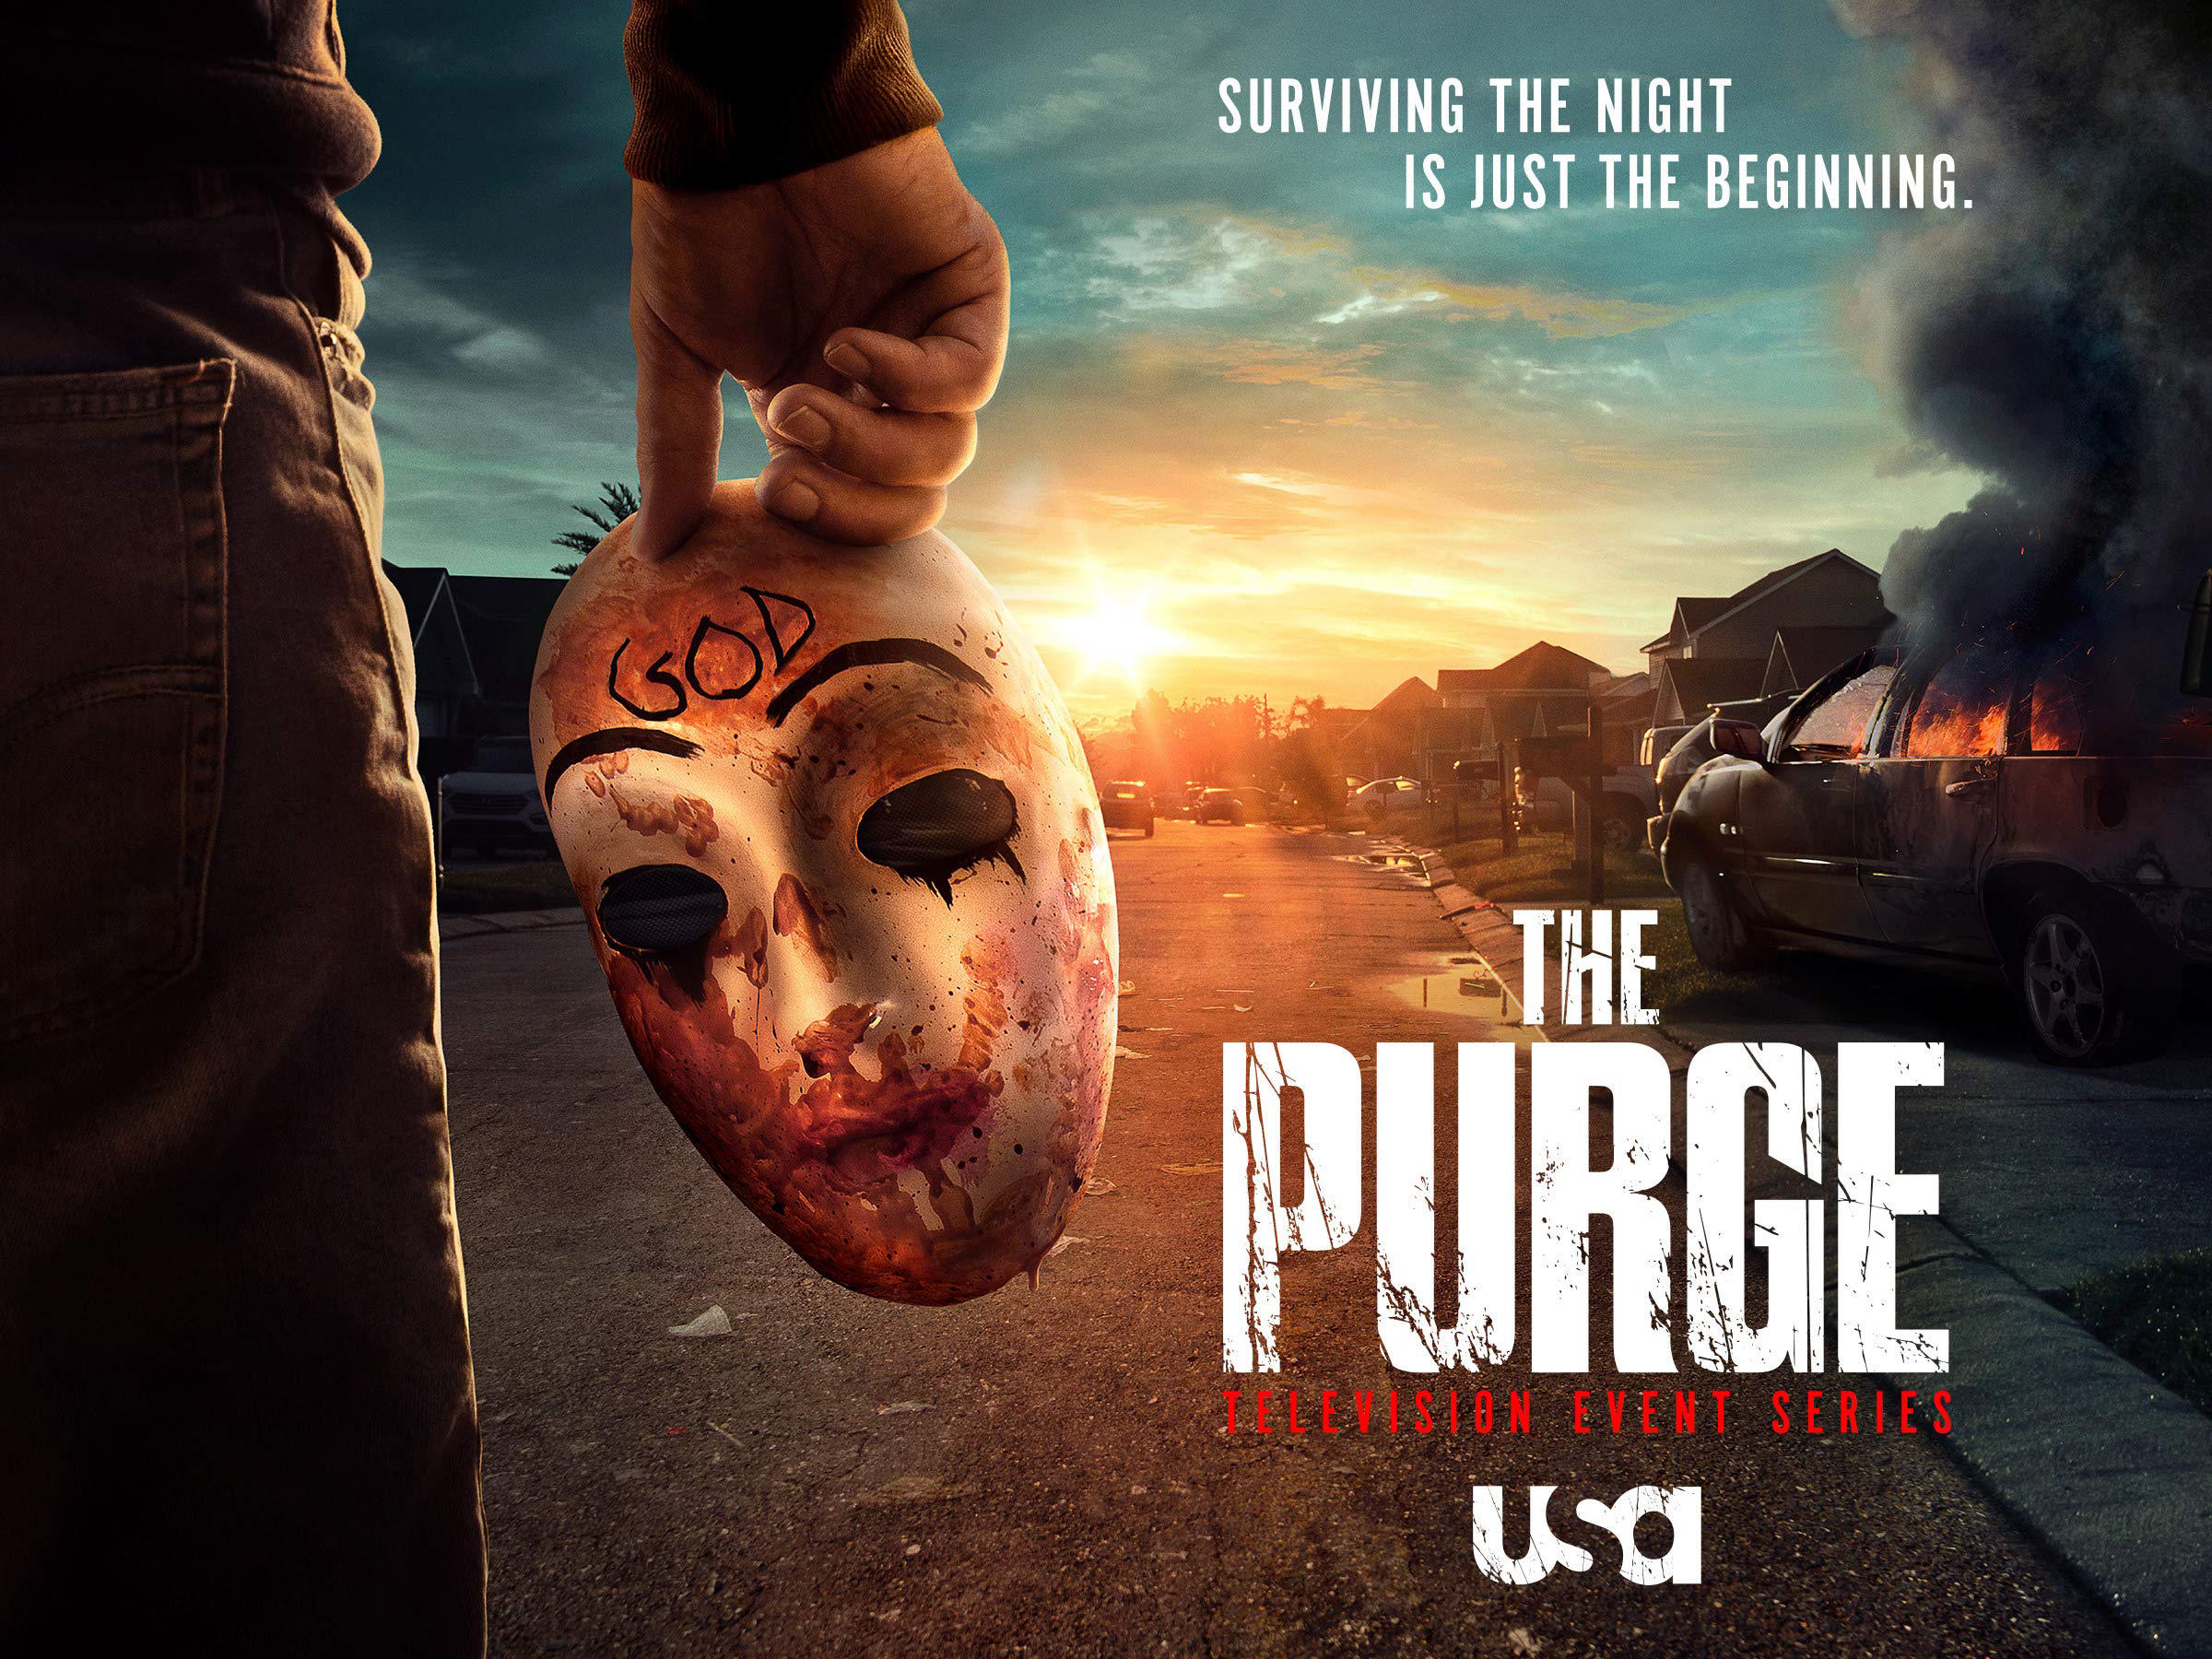 Ngày Thanh Trừng (Phần 2) - The Purge (Season 2) (2019)